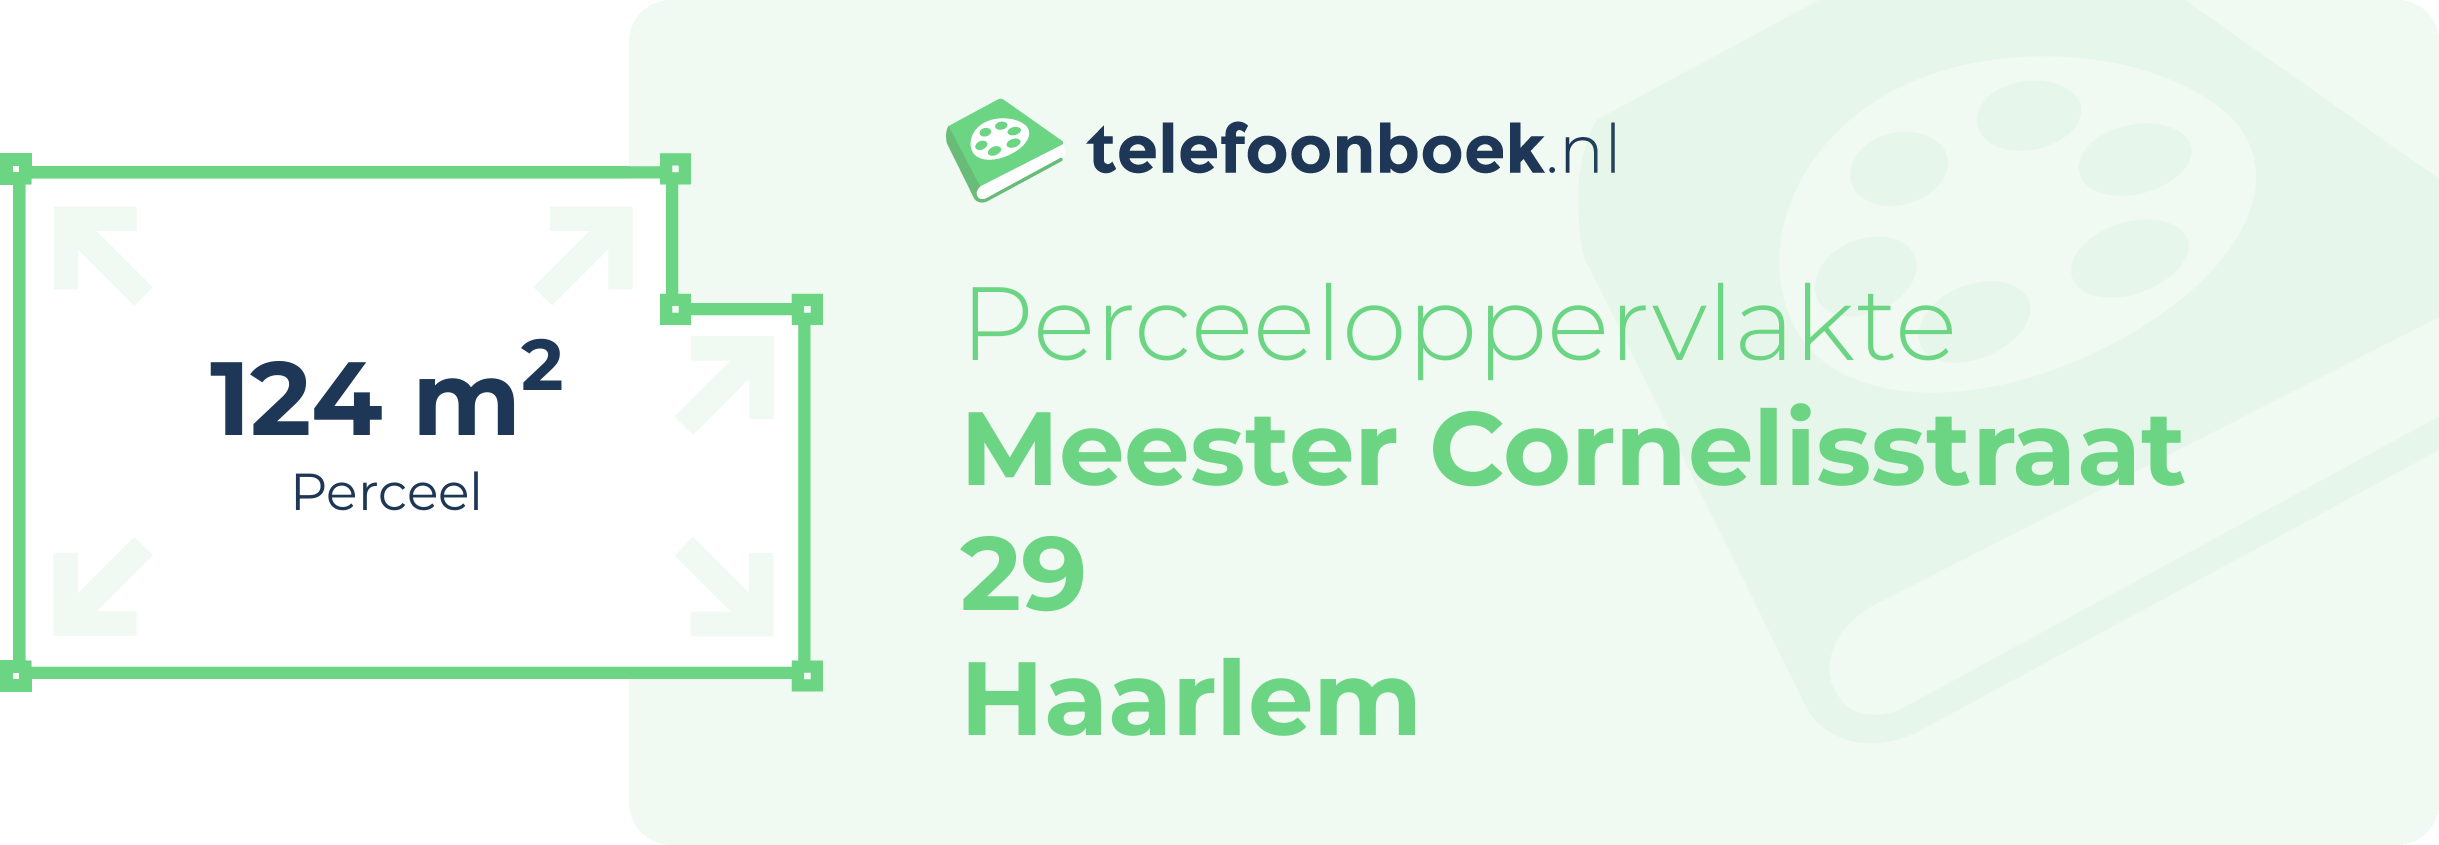 Perceeloppervlakte Meester Cornelisstraat 29 Haarlem